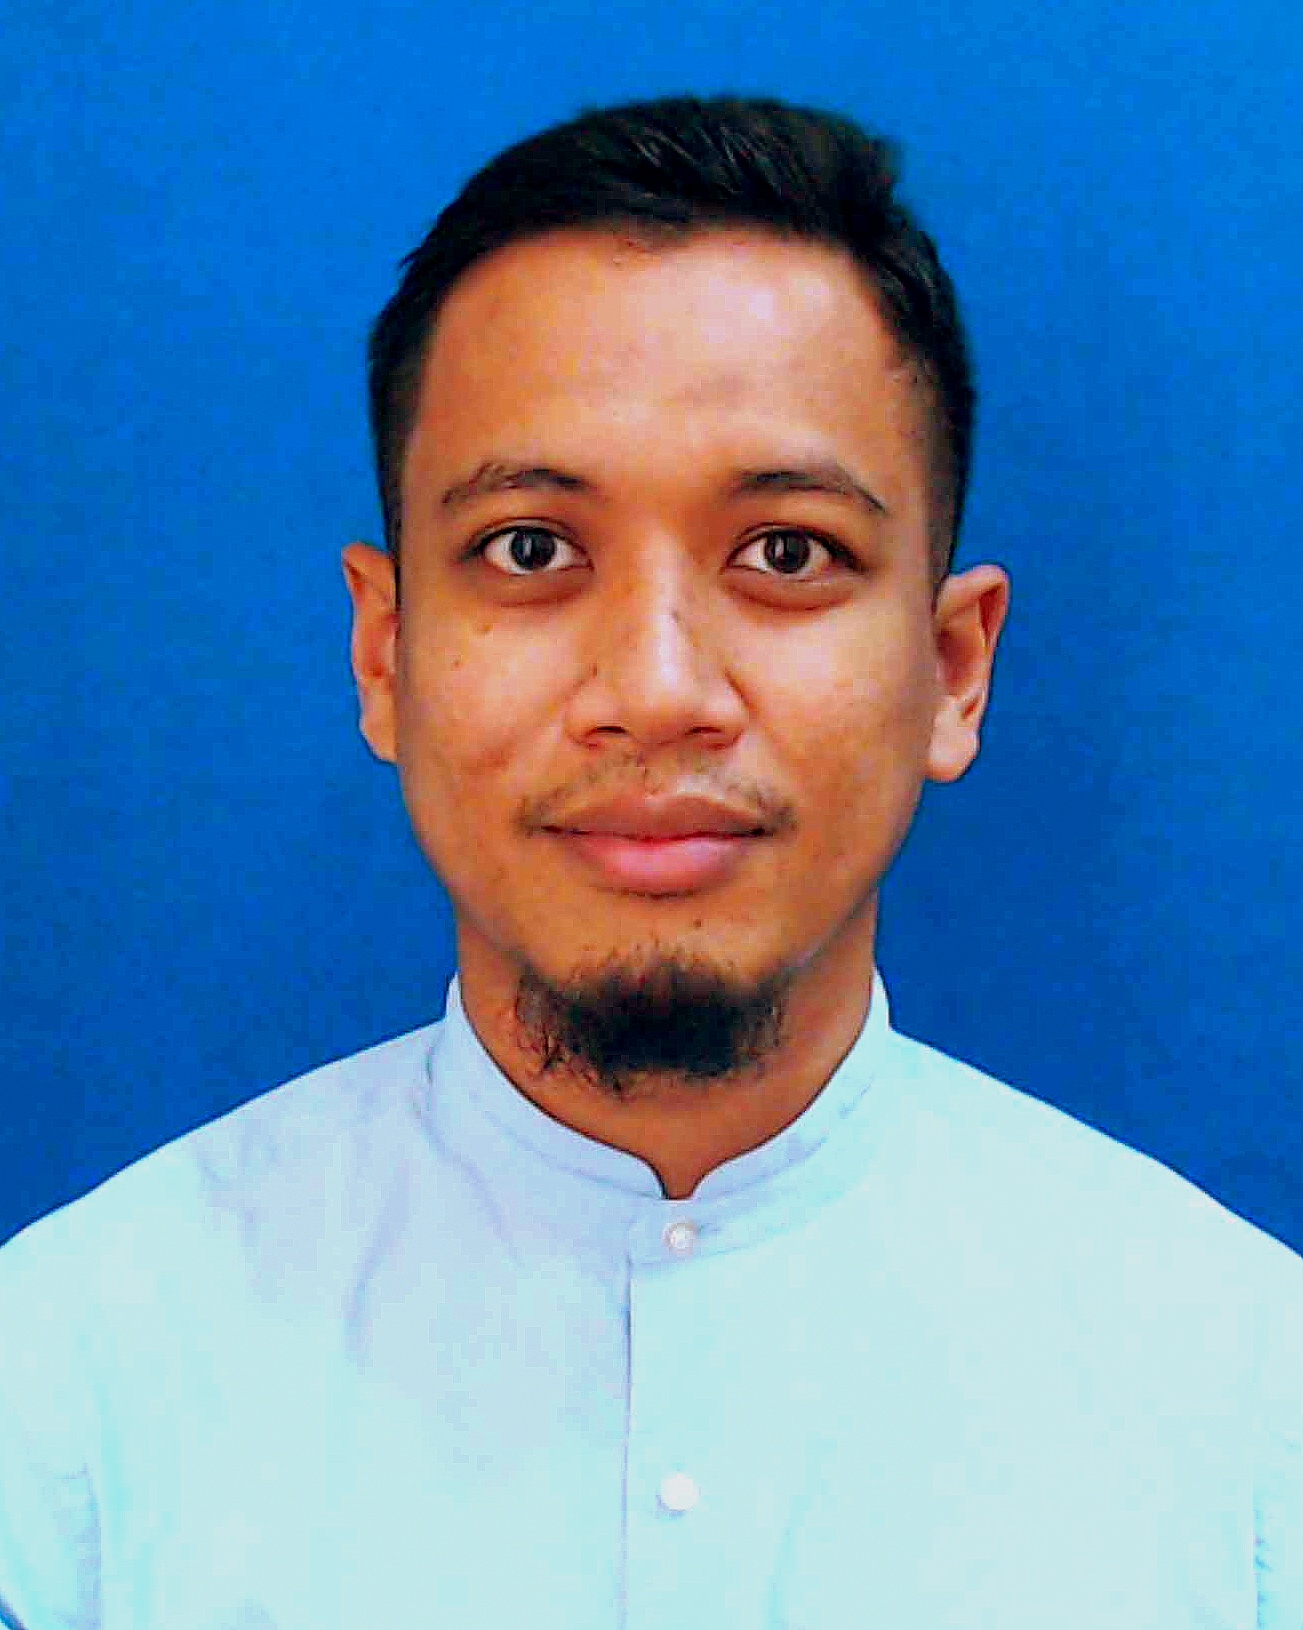 Mohd Nazir bin Mohd Nazori